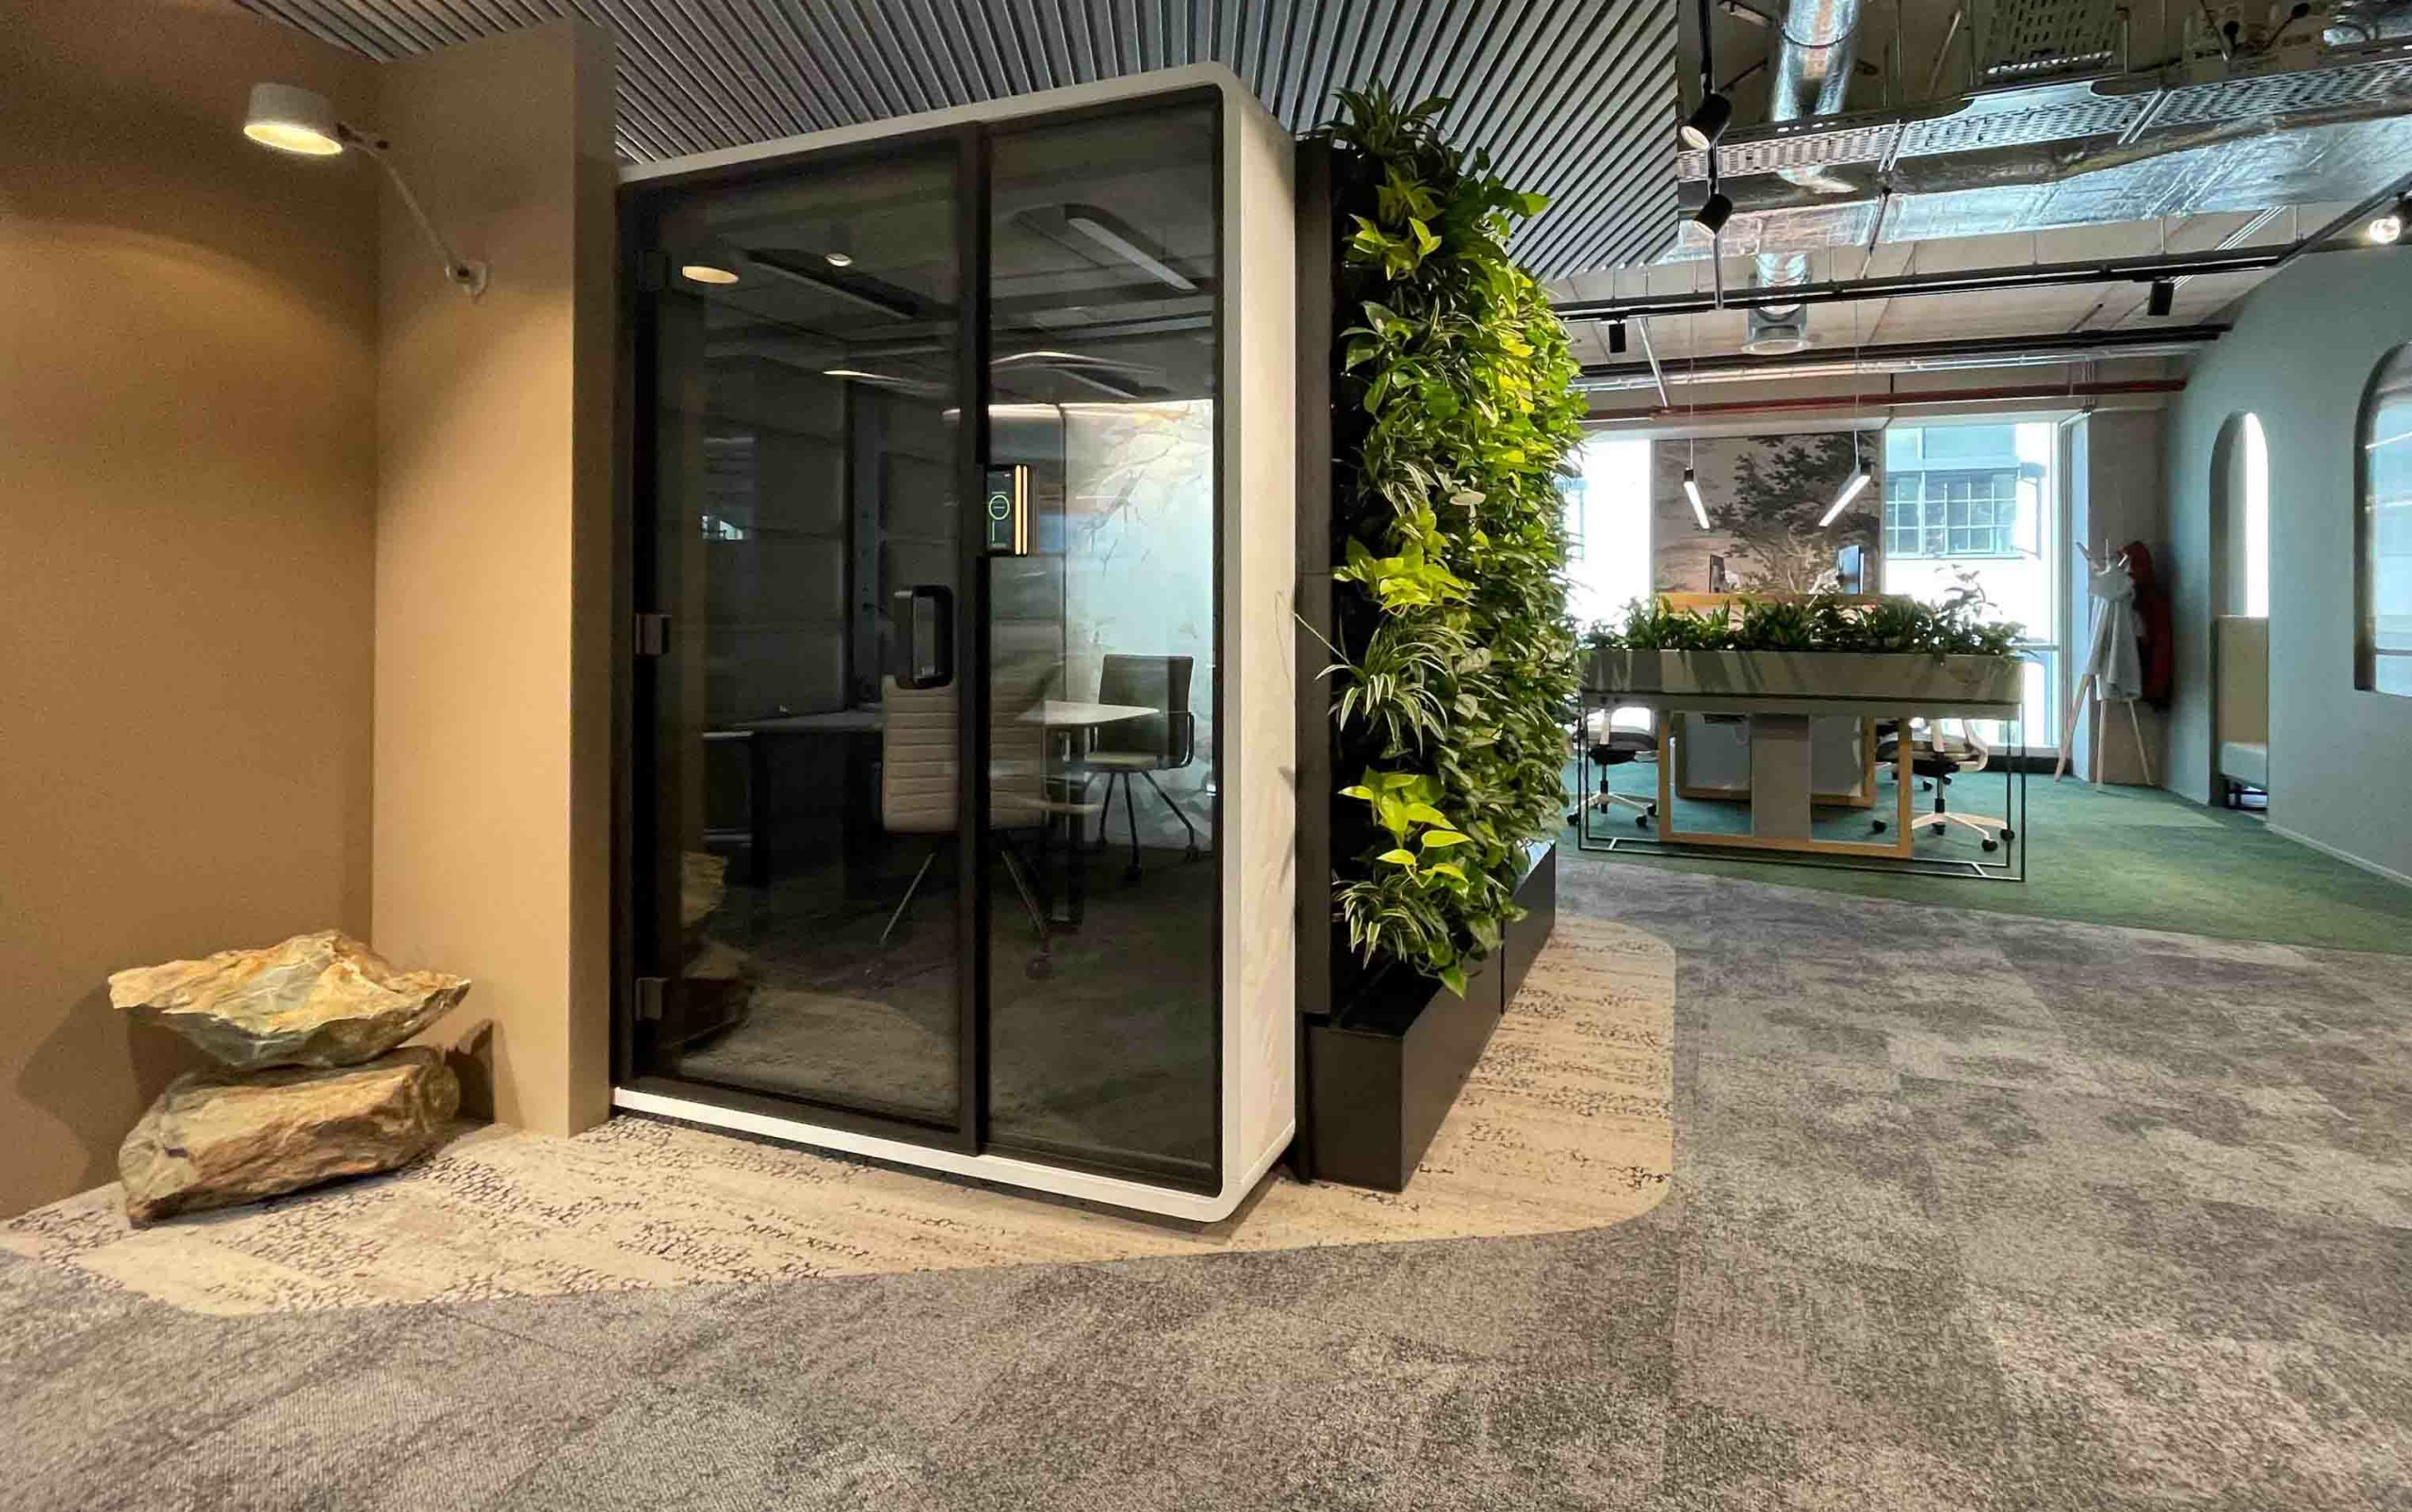 Bemax-office-concepts-kantoorinrichting-werkruimte-ddw-dutchdesignweek-innovatie-nieuwe-showroom2